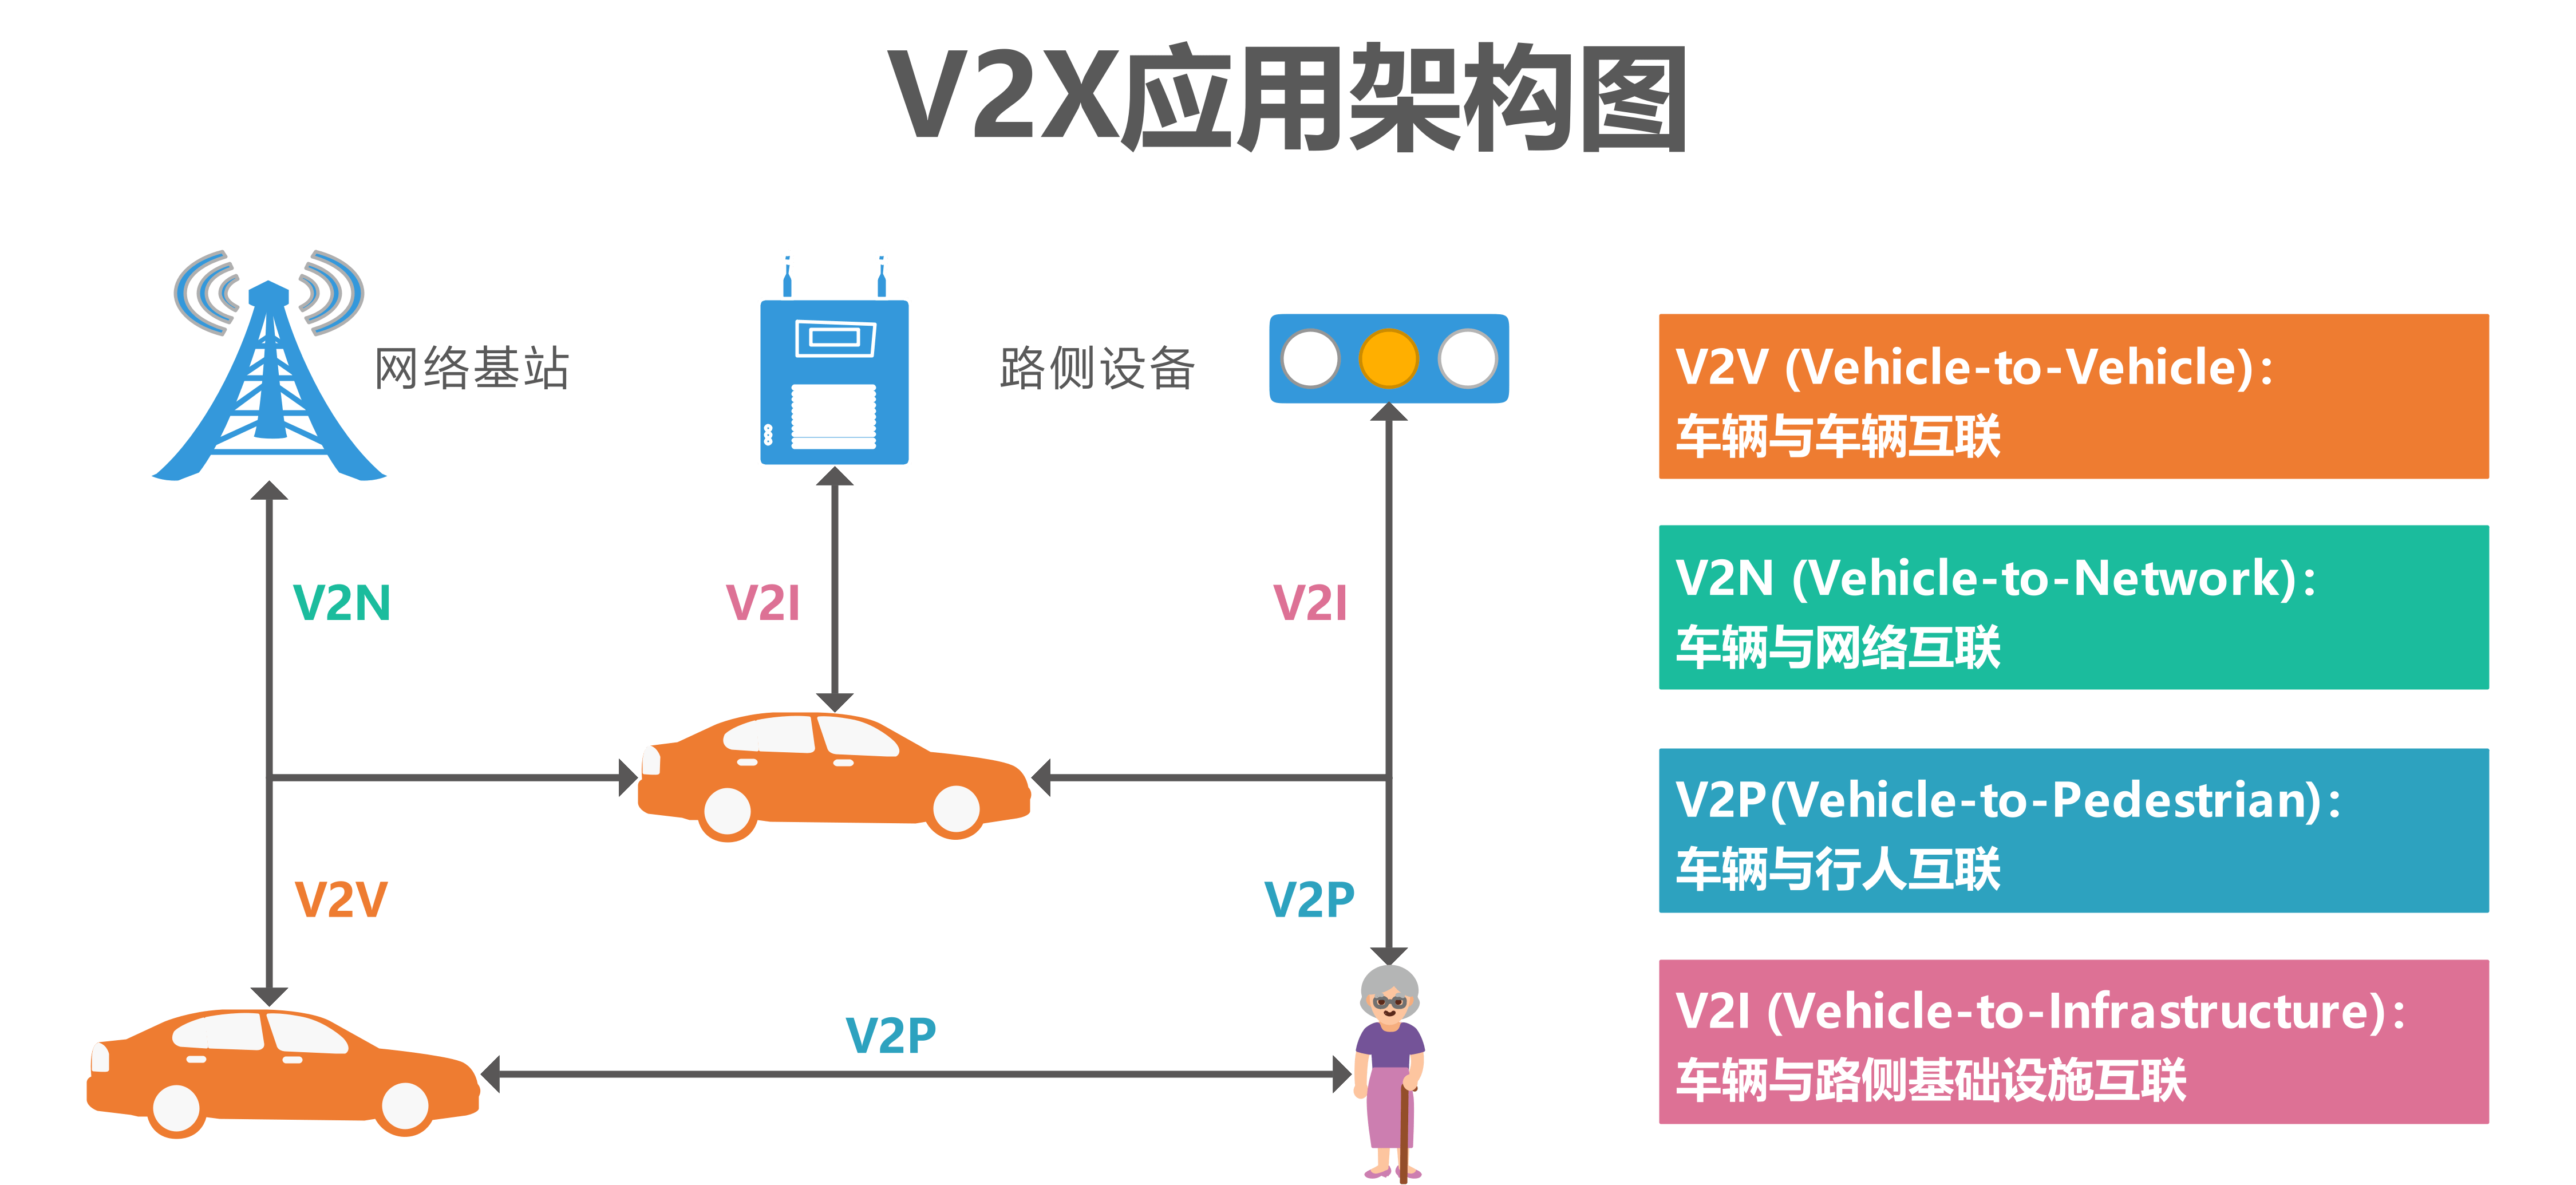 浅谈tts语音技术在车联网v2x中是如何应用的